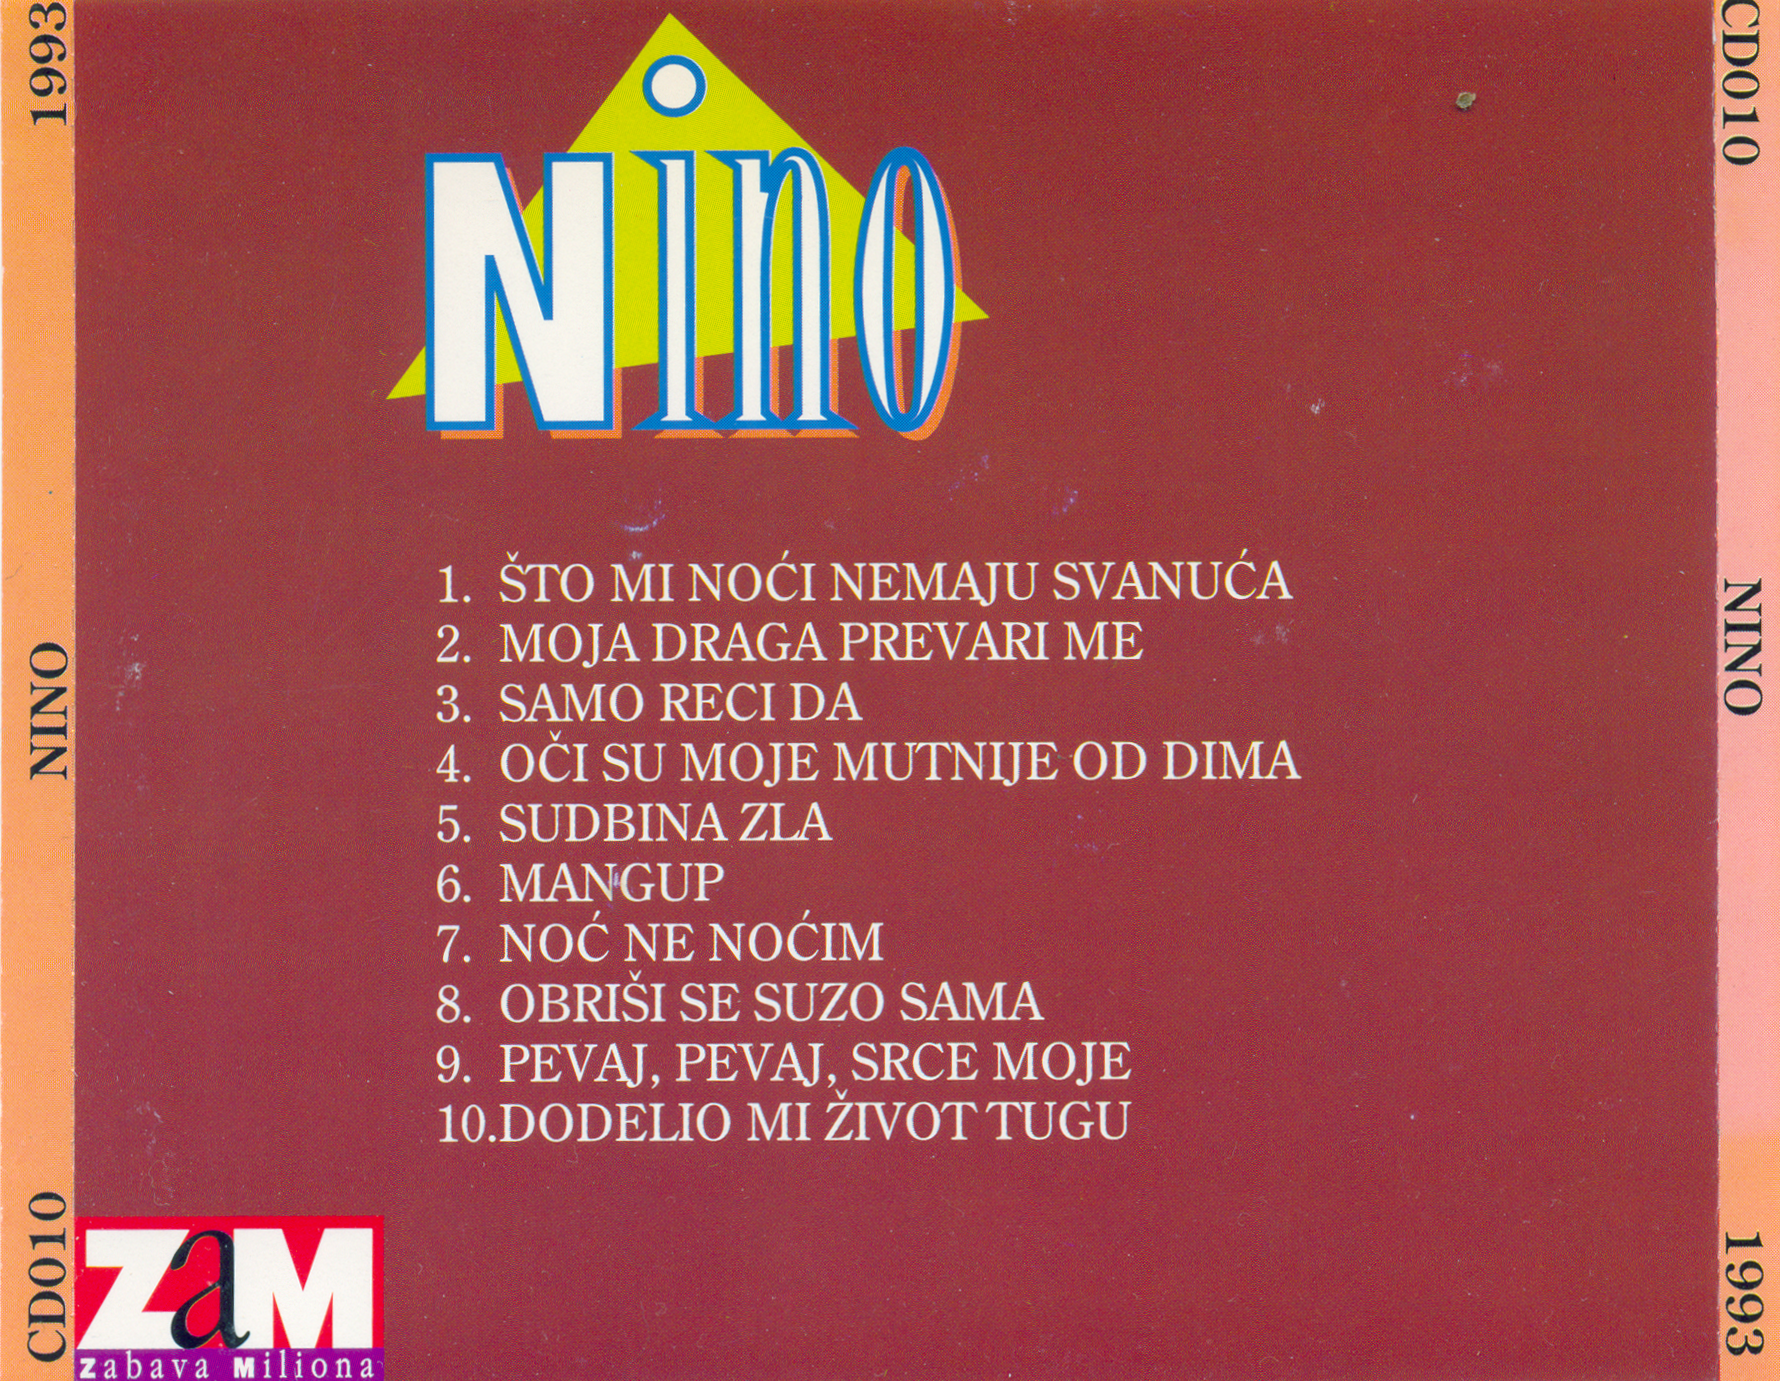 NINO 1993 STO MI NOCI NEMAJU SVANUCA 02